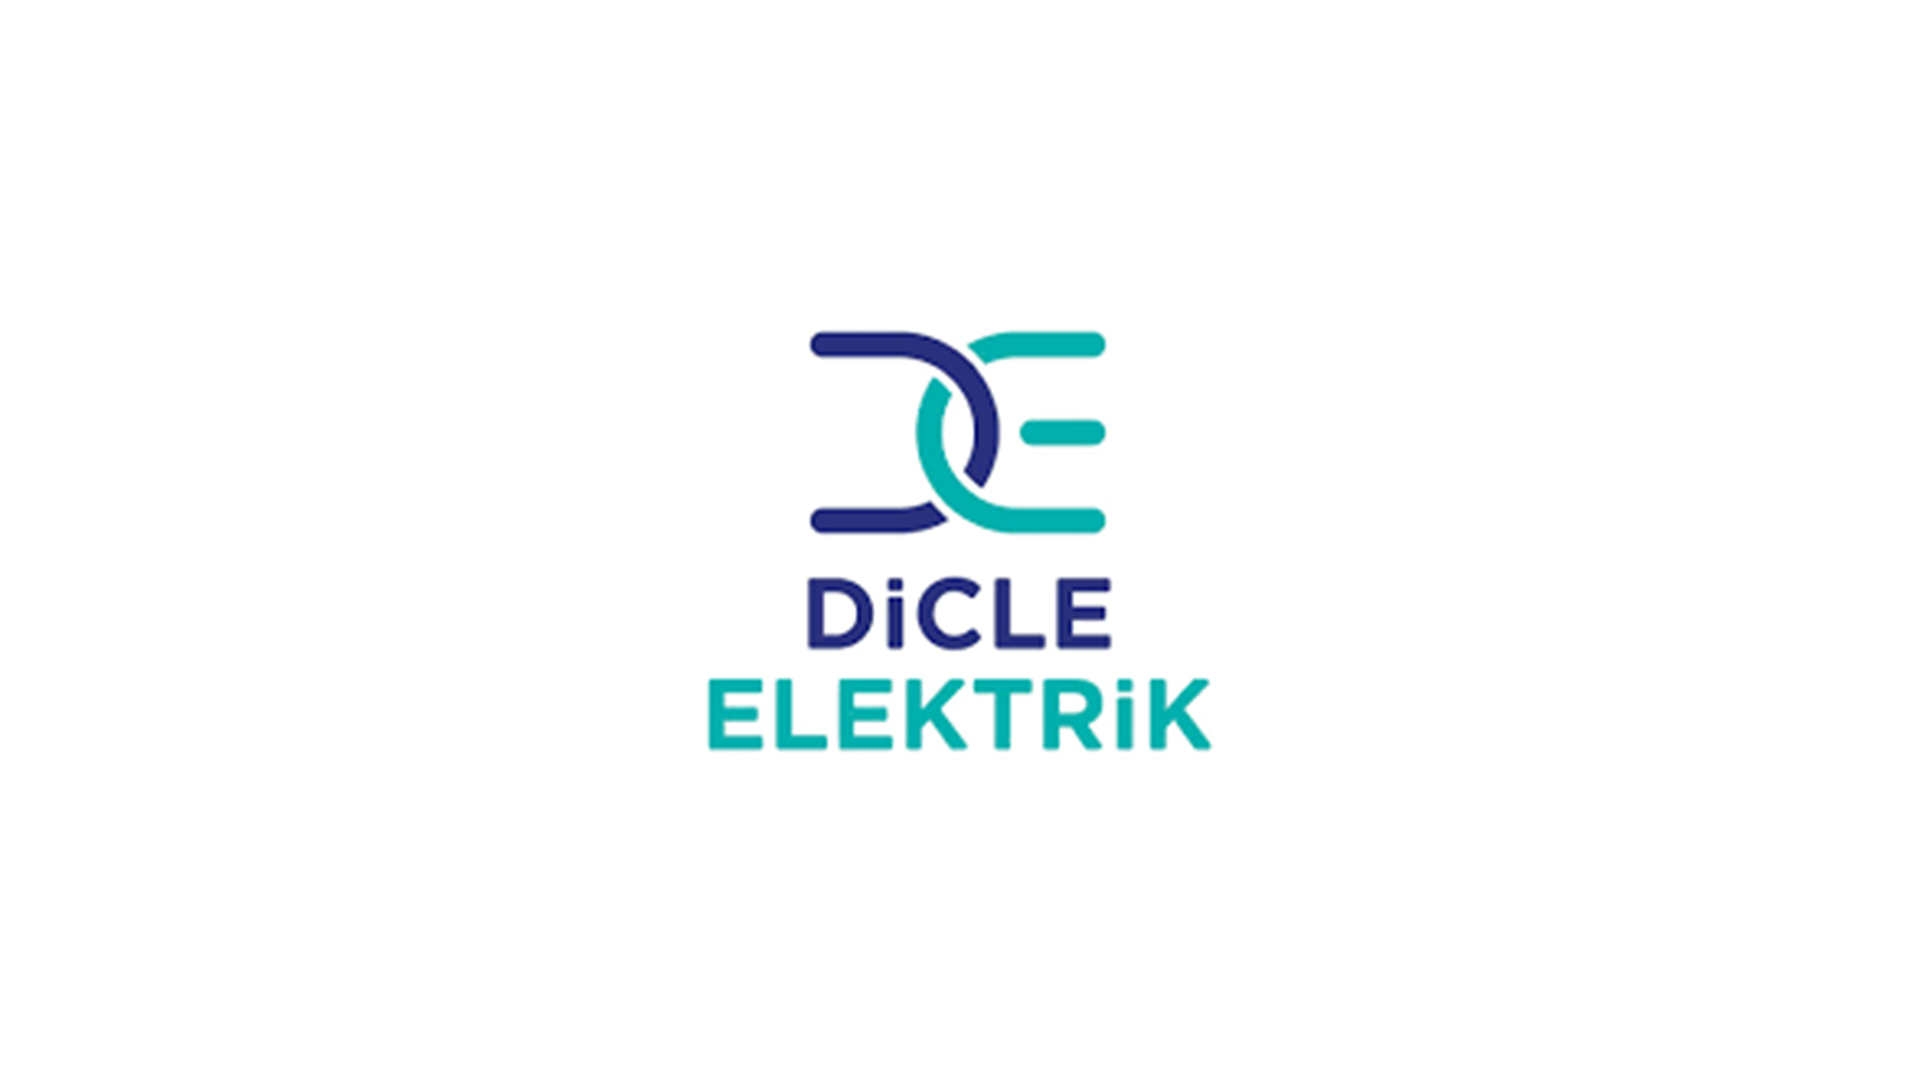 Dicle Elektrik: Borcunu ödemeyen aboneye elektrik verilmeyecek.